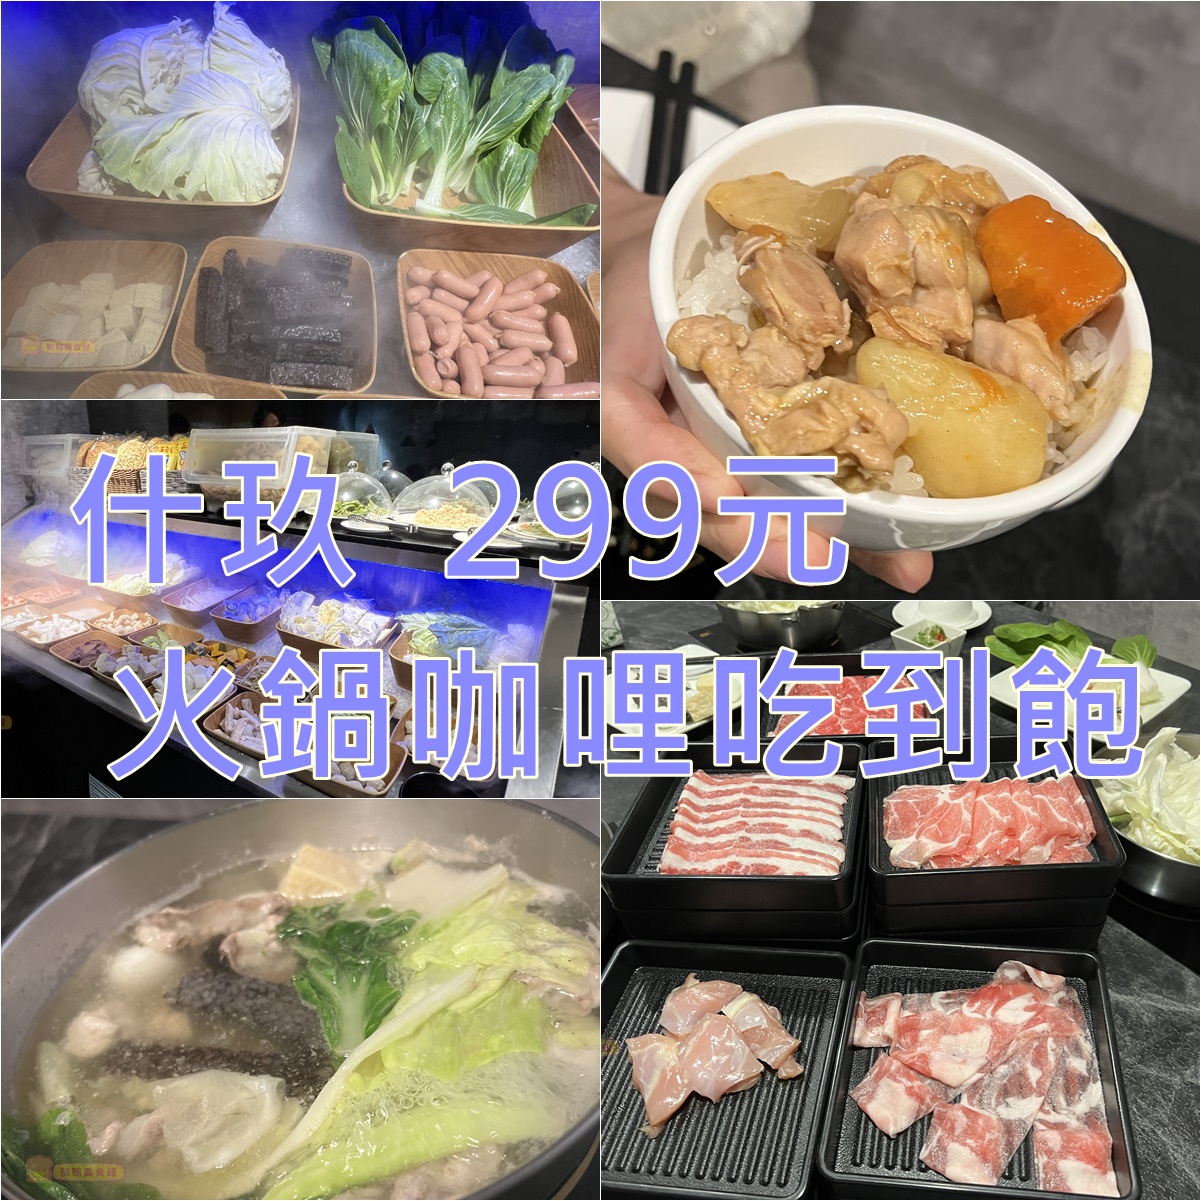 即時熱門文章：(4)台北中山區。什玖日式鍋物~299元咖哩飯加肉片、鮮蔬、霜淇淋吃到飽